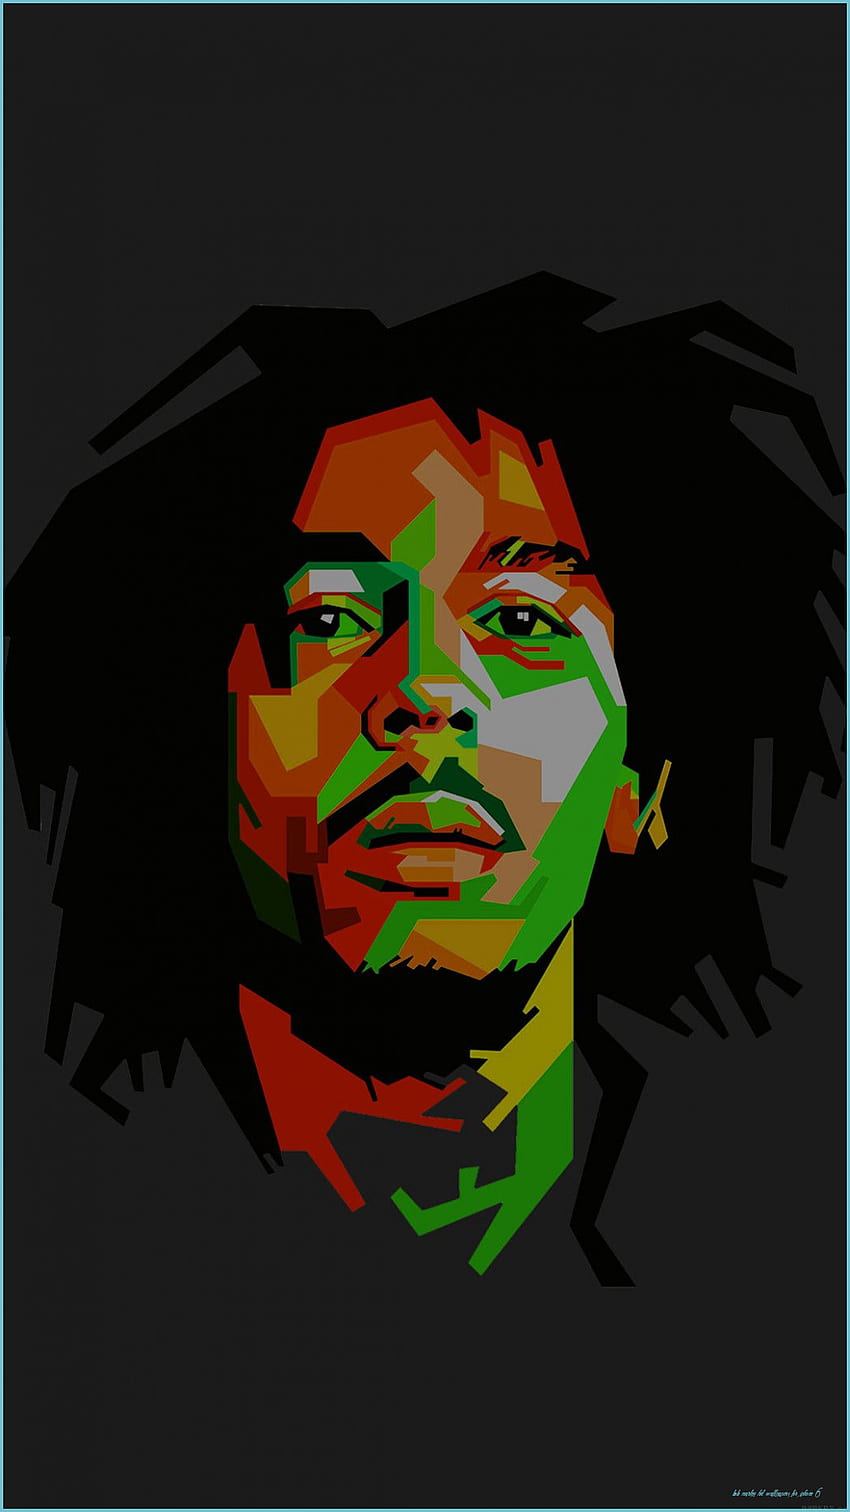 Bob Marley IPhone - Top Bob Marley IPhone - Bob Marley For iPhone 6, Bob Marley Flag HD phone wallpaper